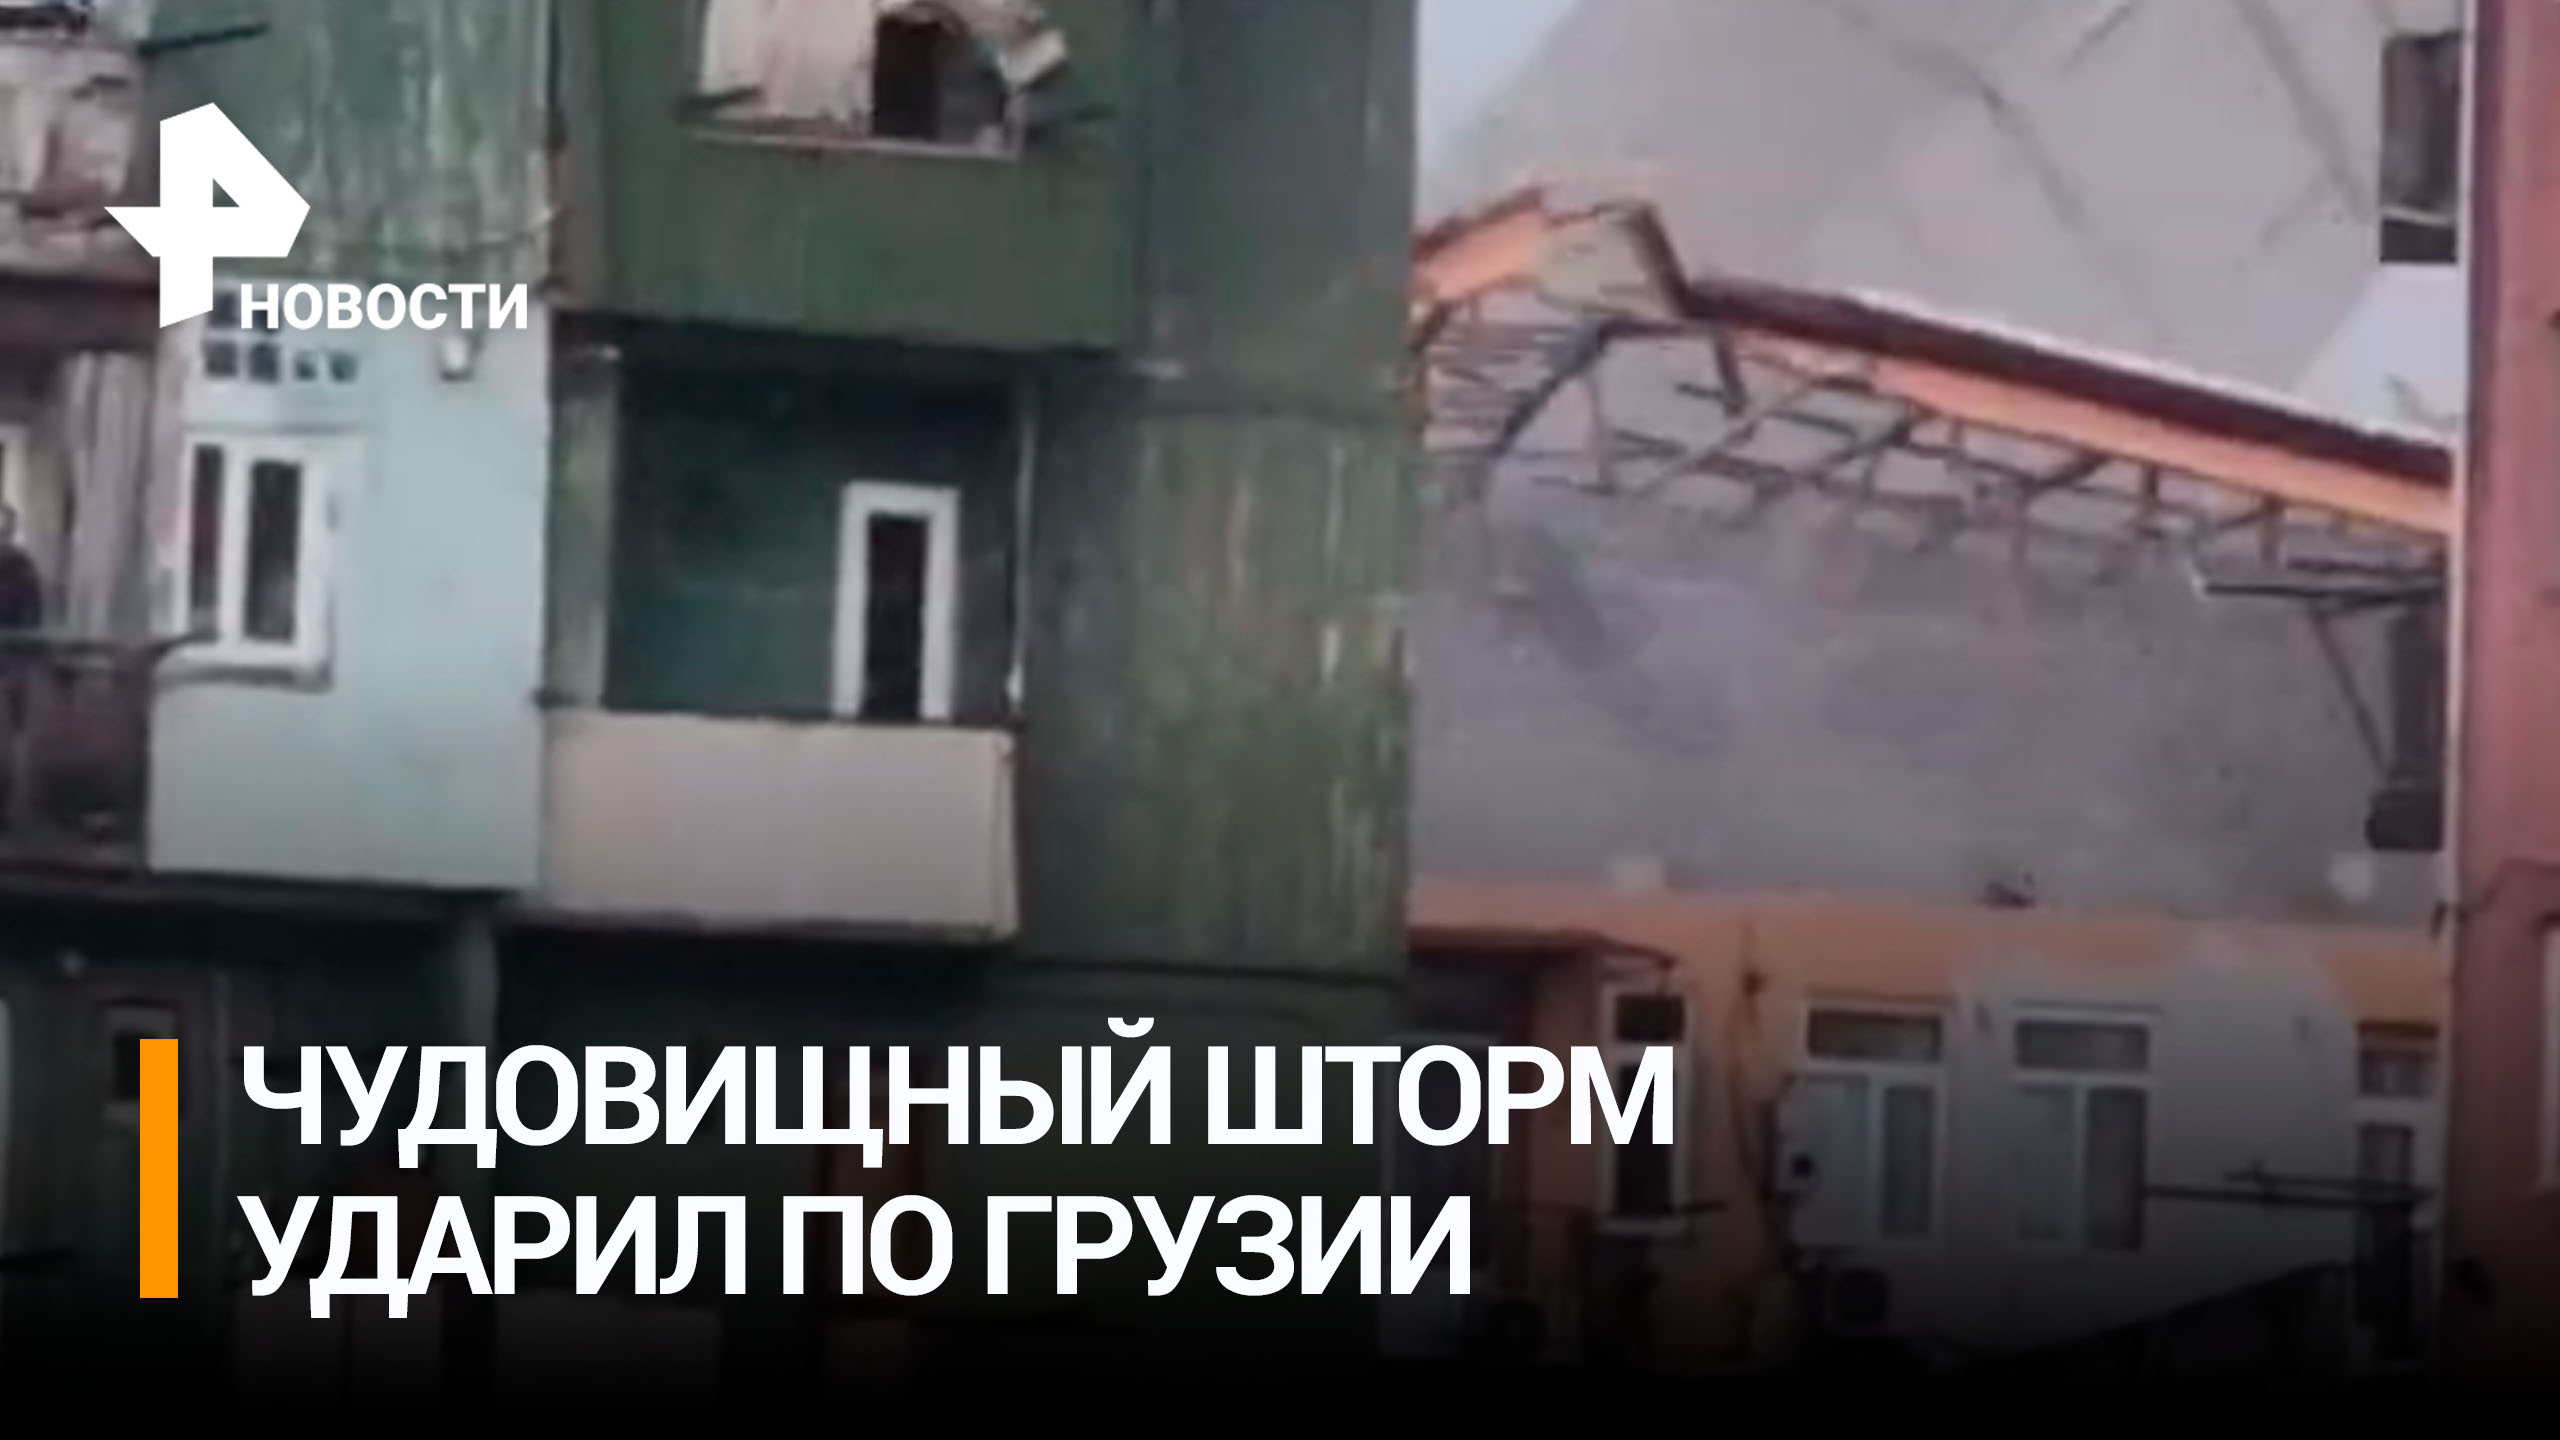 "Буря столетия" хлещет по Грузии и срывает крыши с домов: есть пострадавшие и жертвы / РЕН Новости